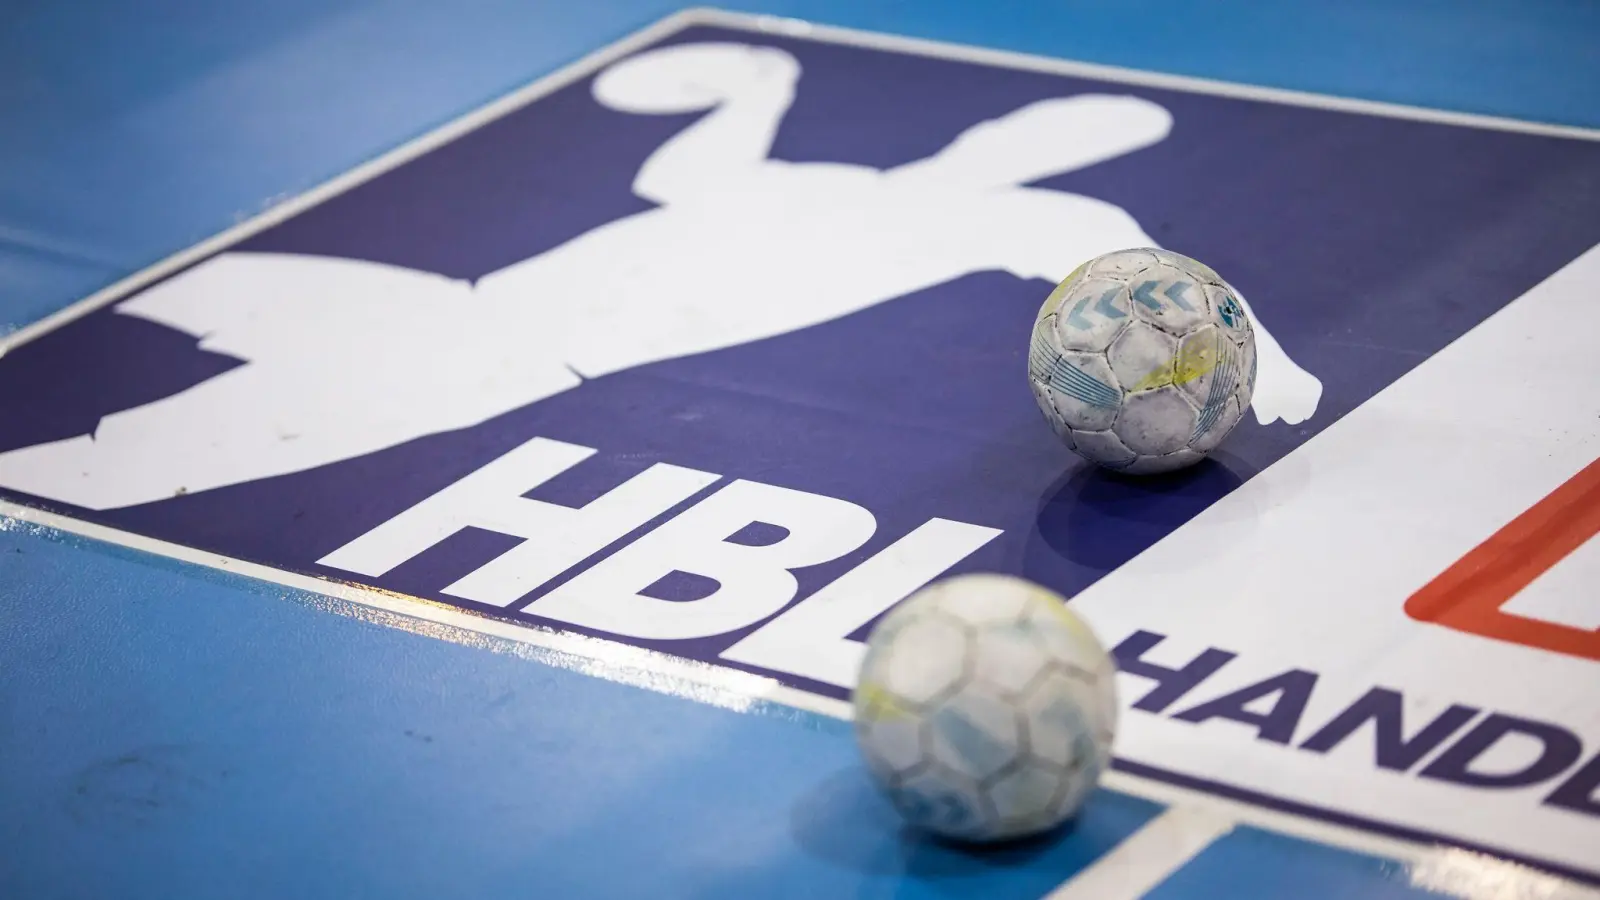 Die Handball-Bundesliga will den Videobeweis einführen. (Foto: Tom Weller/Deutsche Presse-Agentur GmbH/dpa)